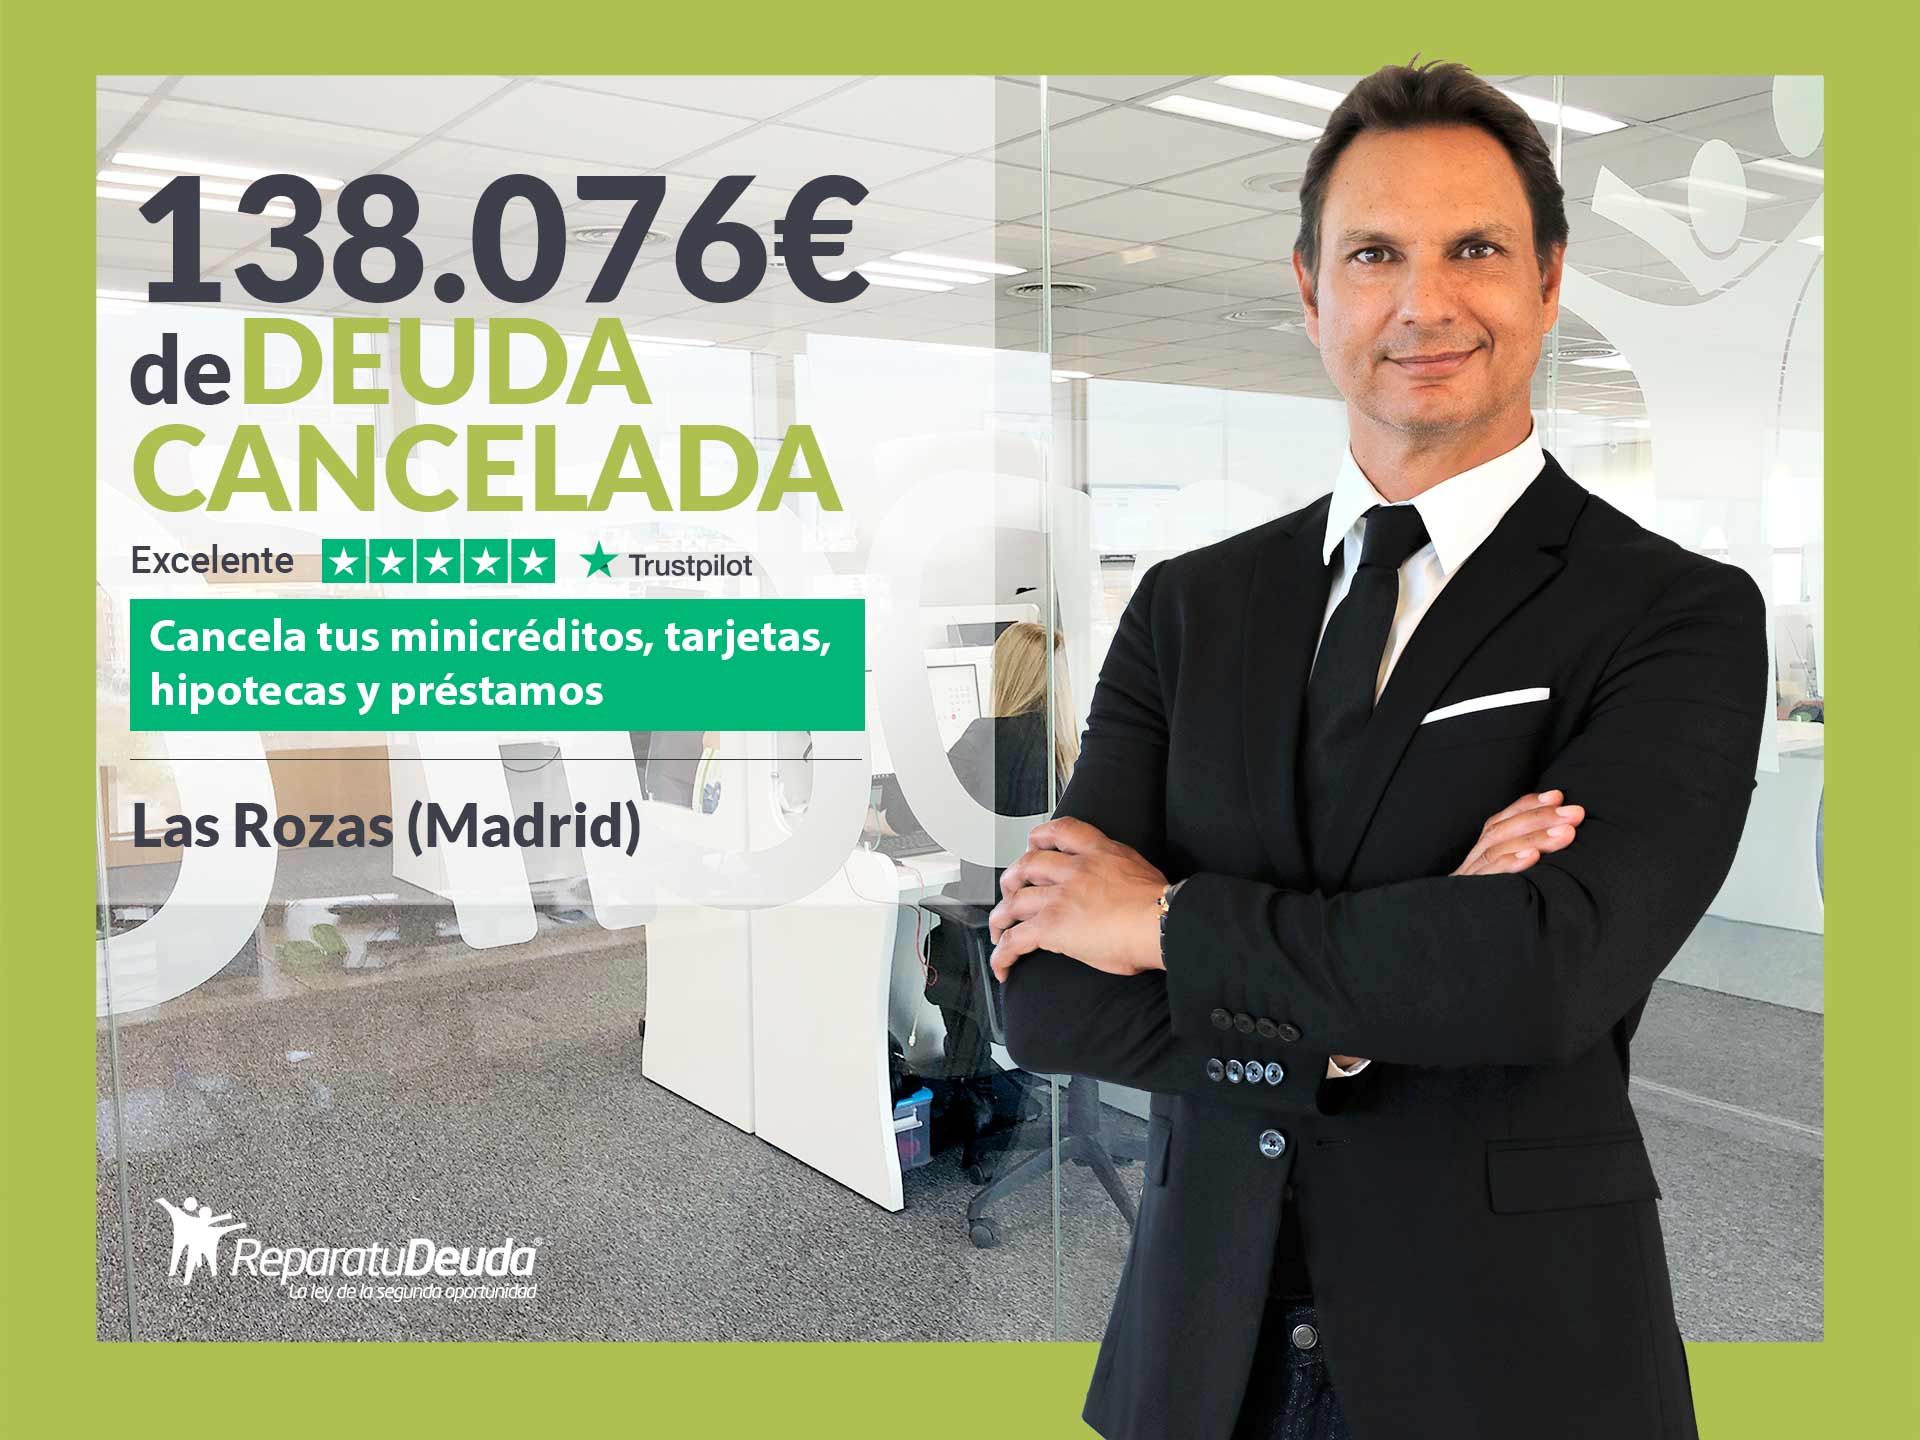 Repara tu Deuda Abogados cancela 138.076? en Las Rozas (Madrid) con la Ley de la Segunda Oportunidad